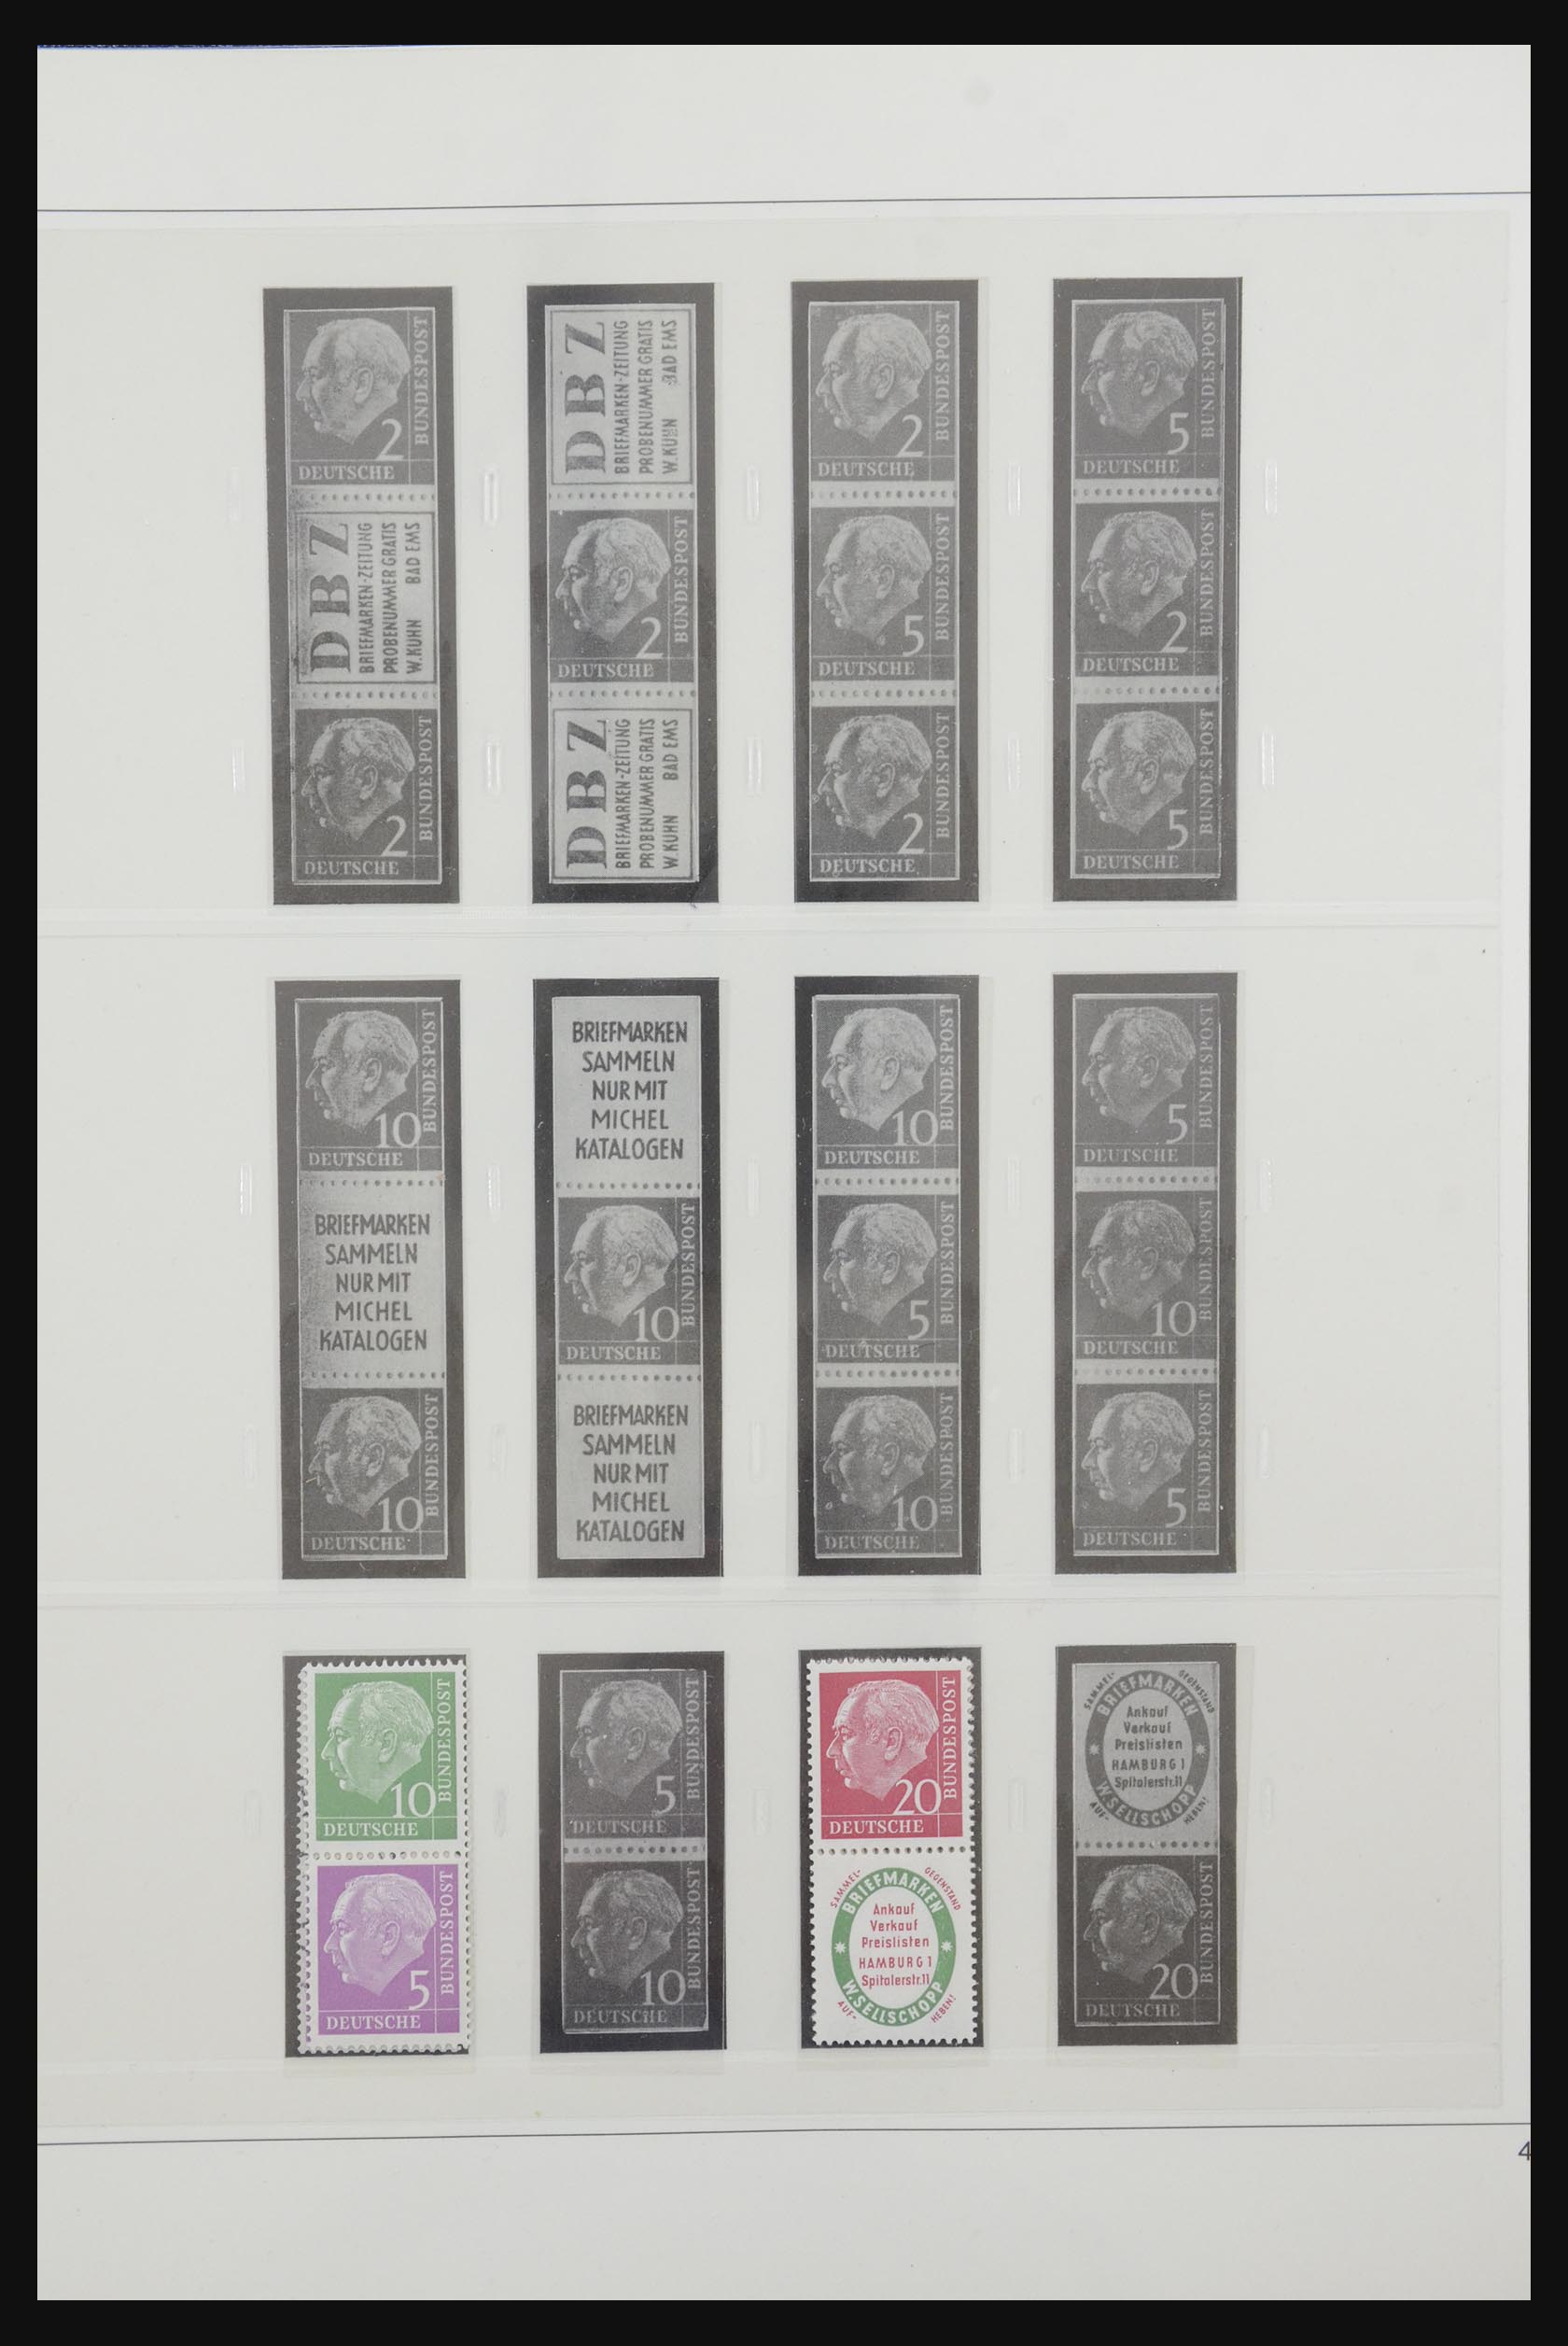 31842 003 - 31842 Bundespost combinations 1951-2003.